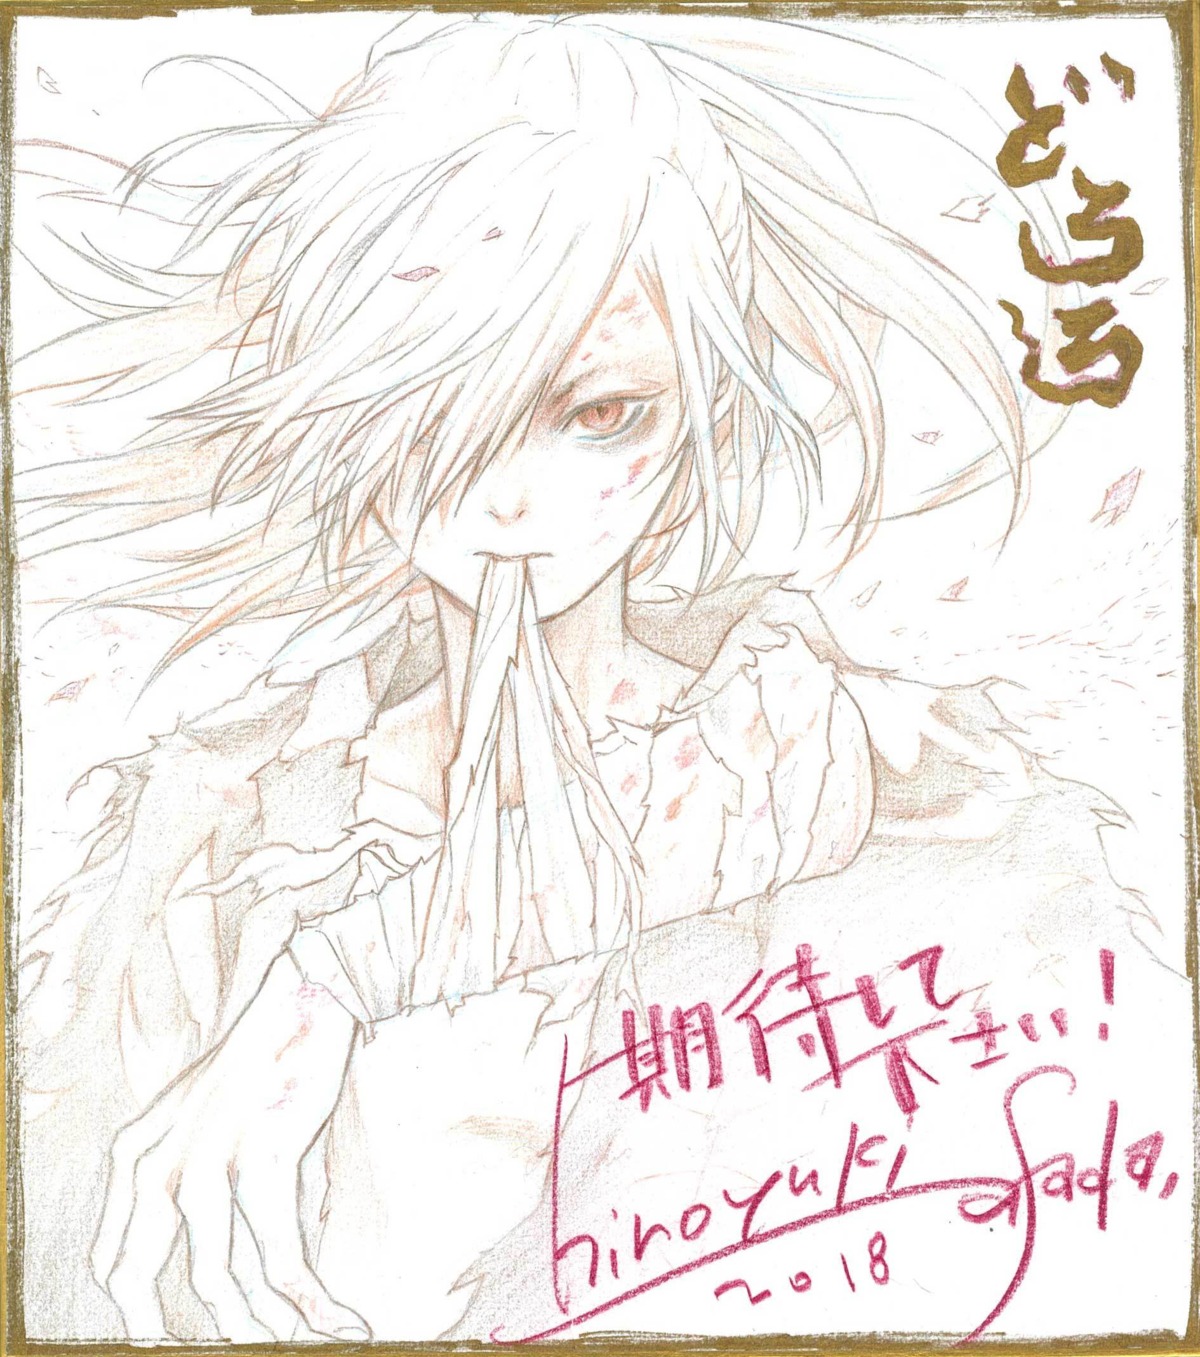 asada_hiroyuki autographed bandages dororo_(manga) sketch